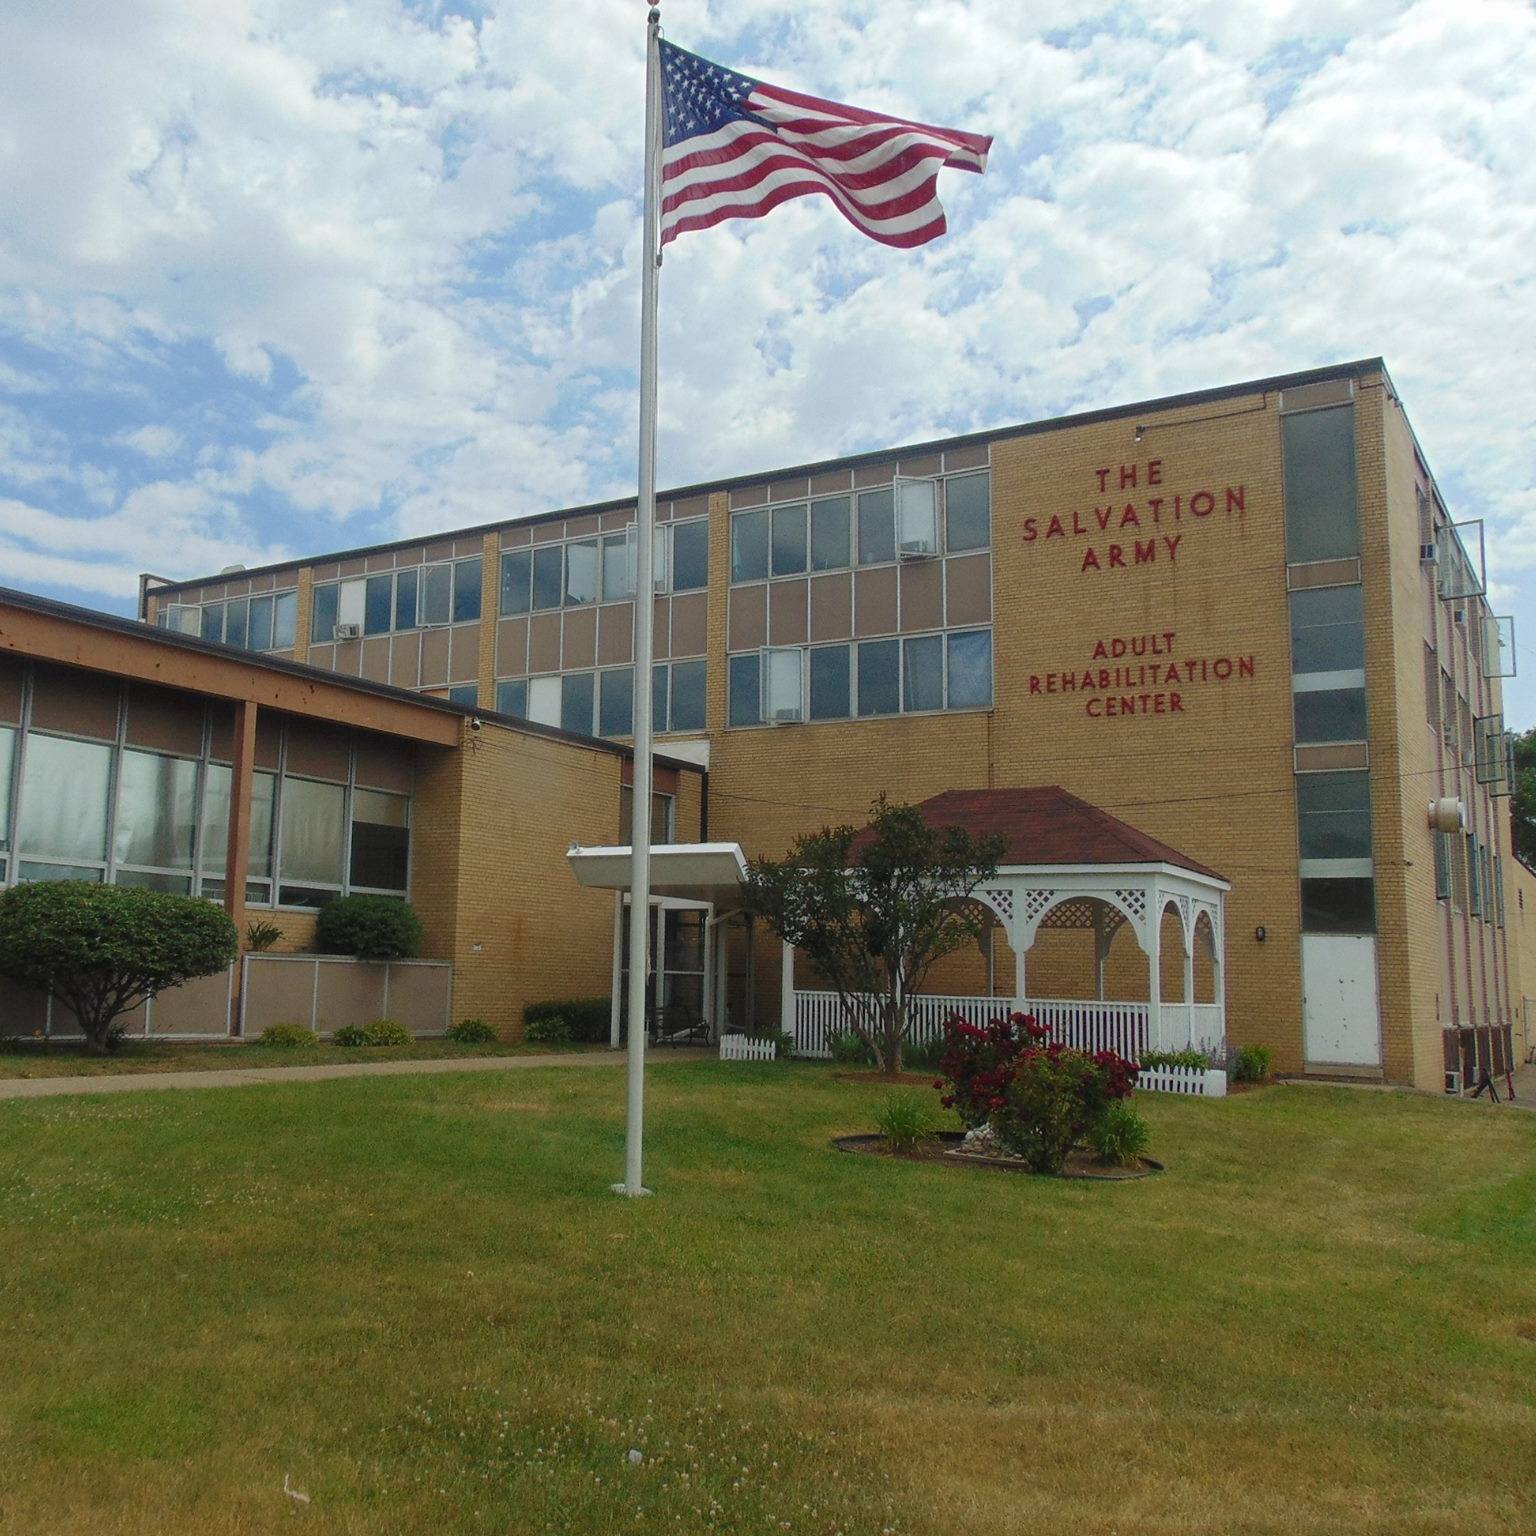 Salvation Army Adult Rehabilitation Center (ARC)